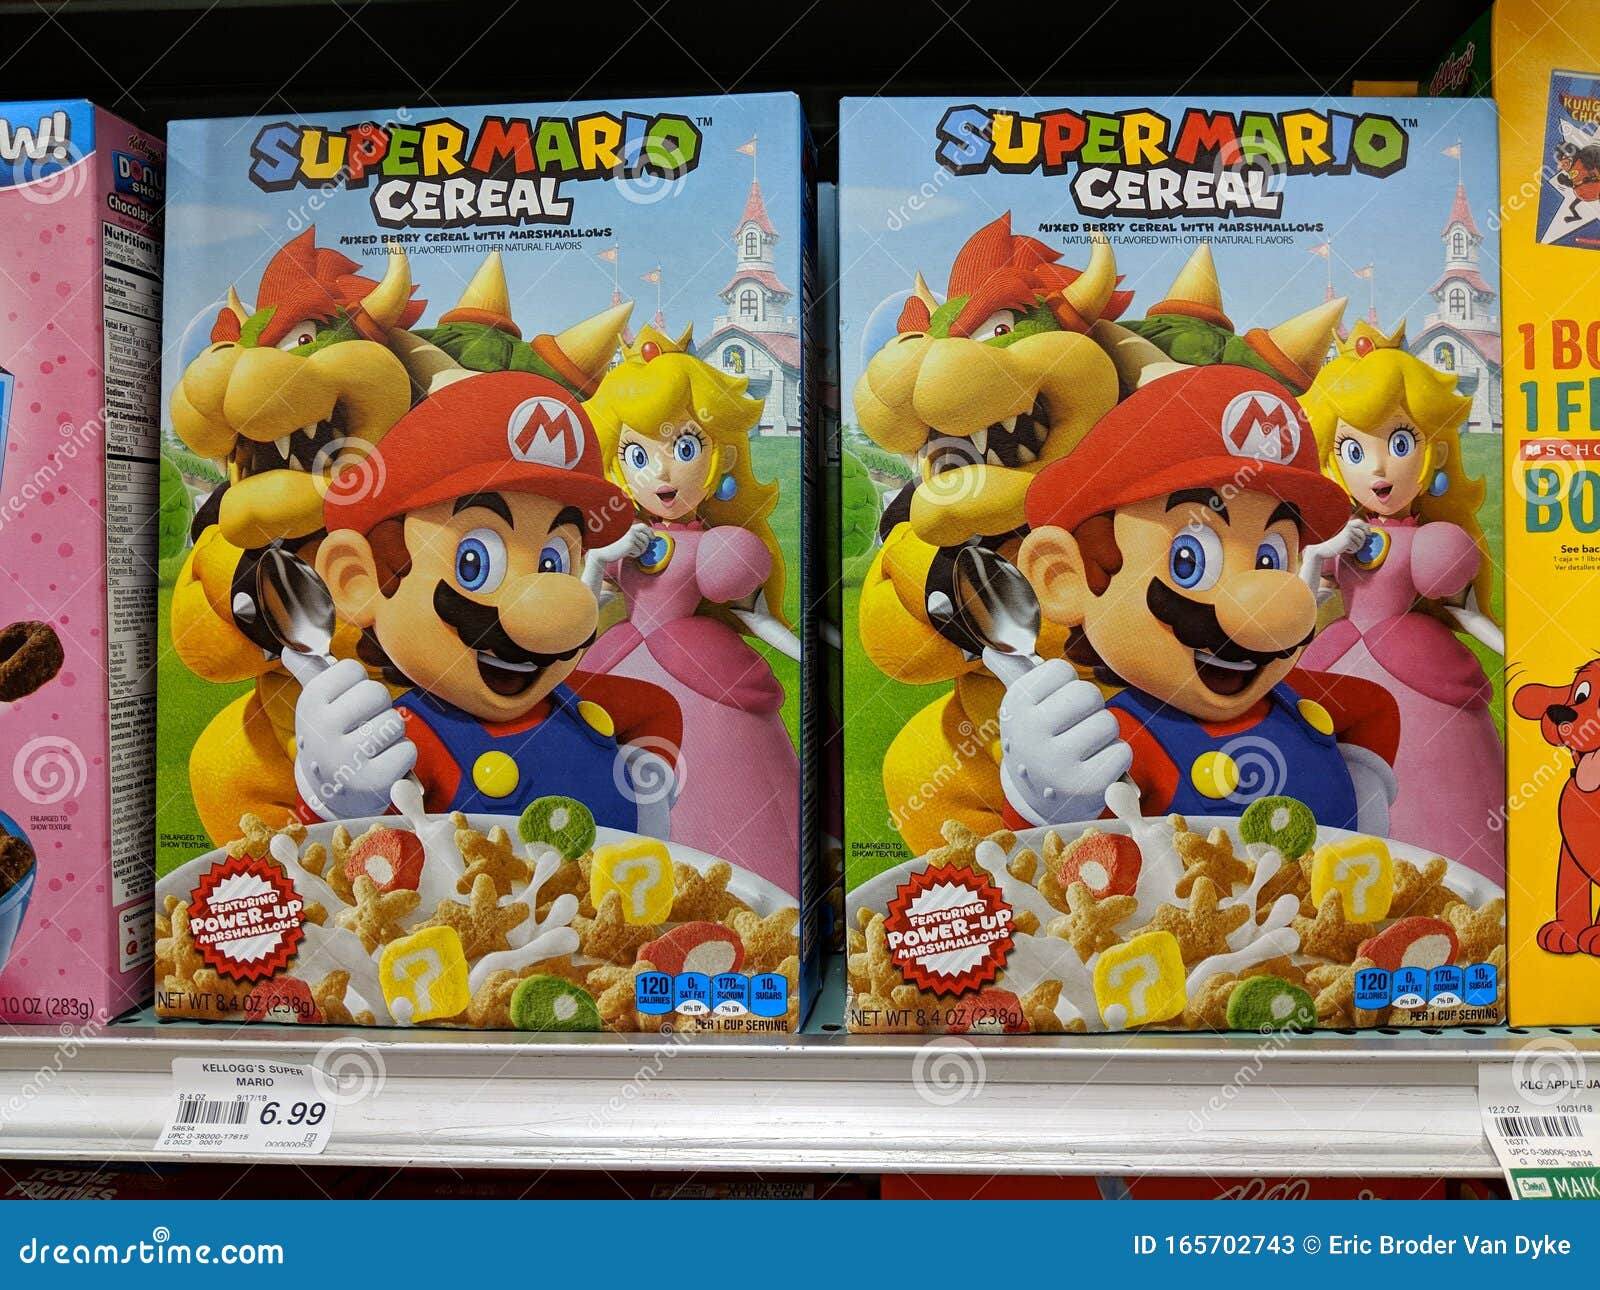 18 Super Mario Bros U Images, Stock Photos, 3D objects, & Vectors